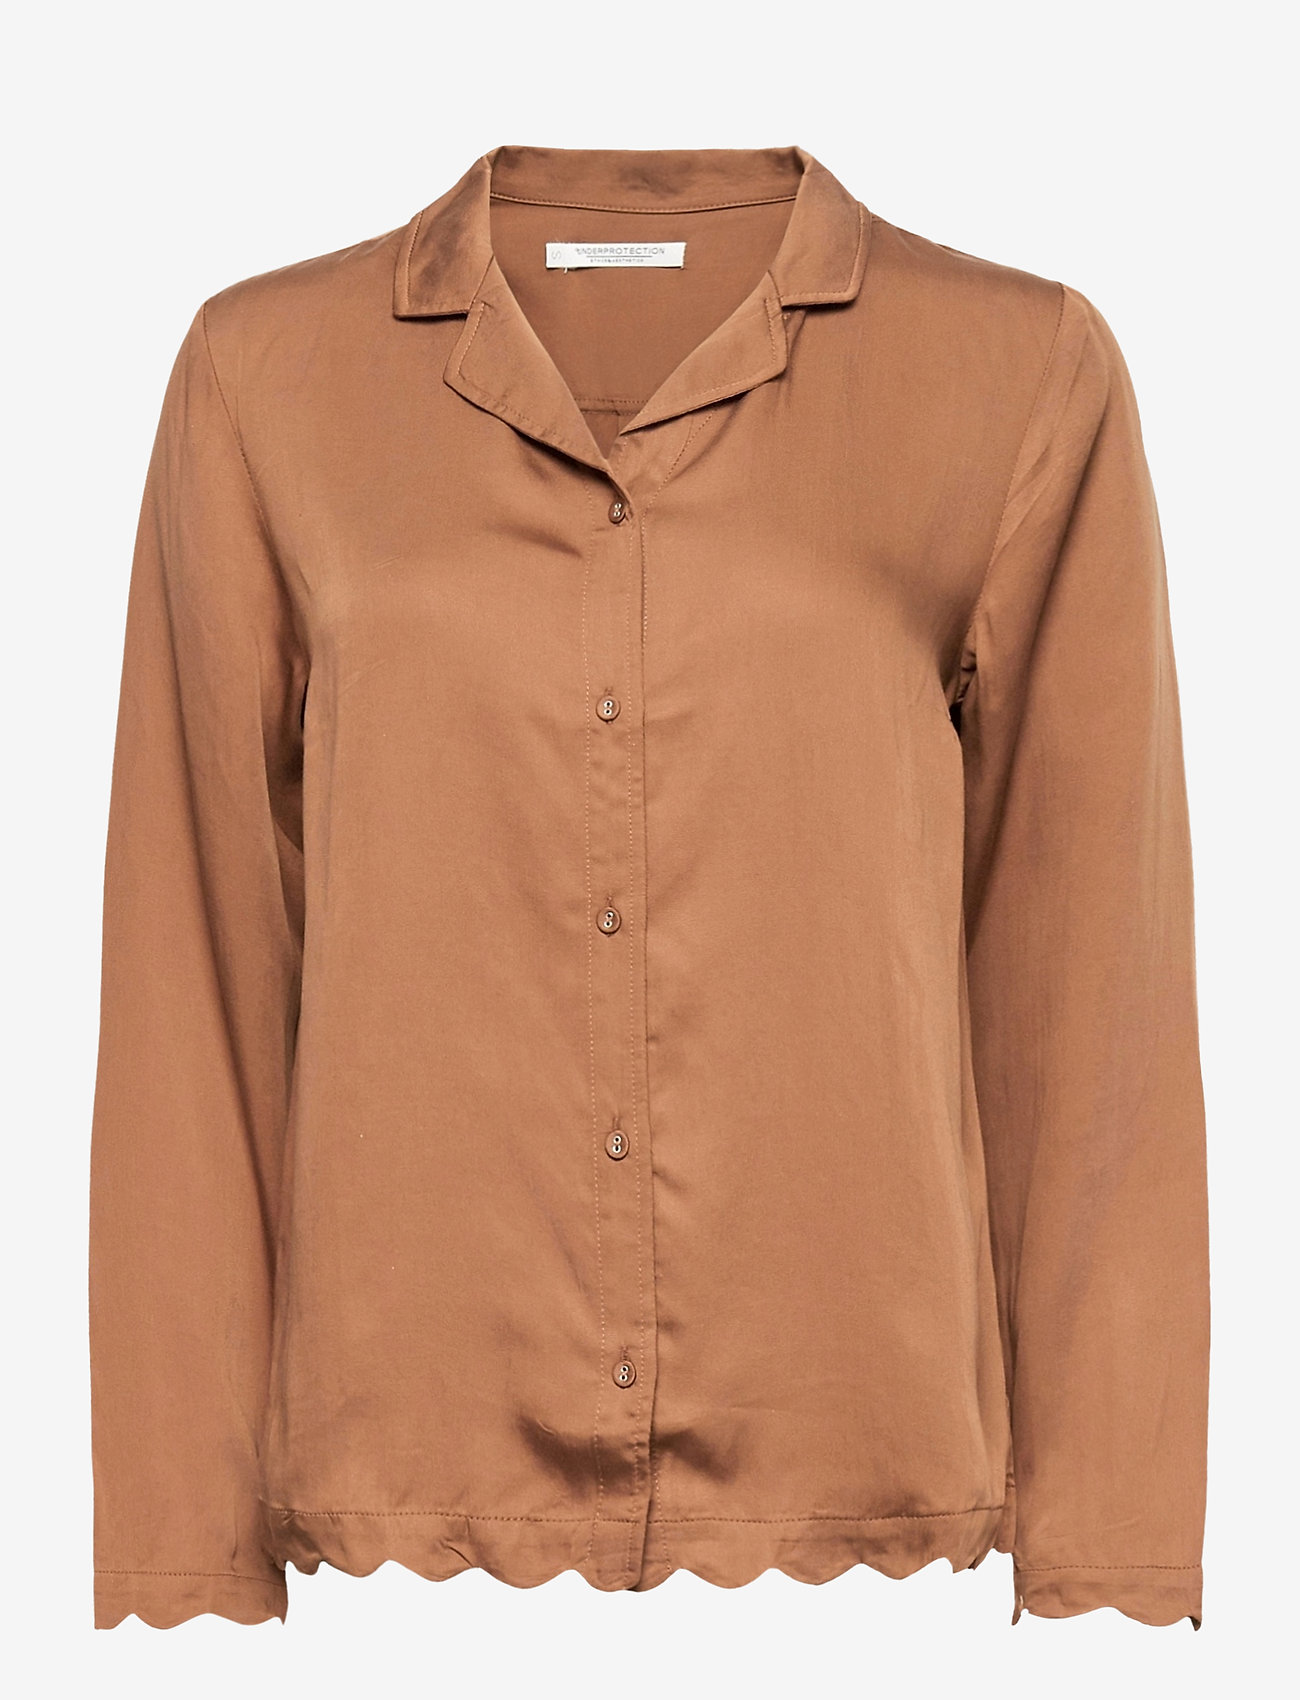 Underprotection - jane shirt - Överdelar - brown - 0